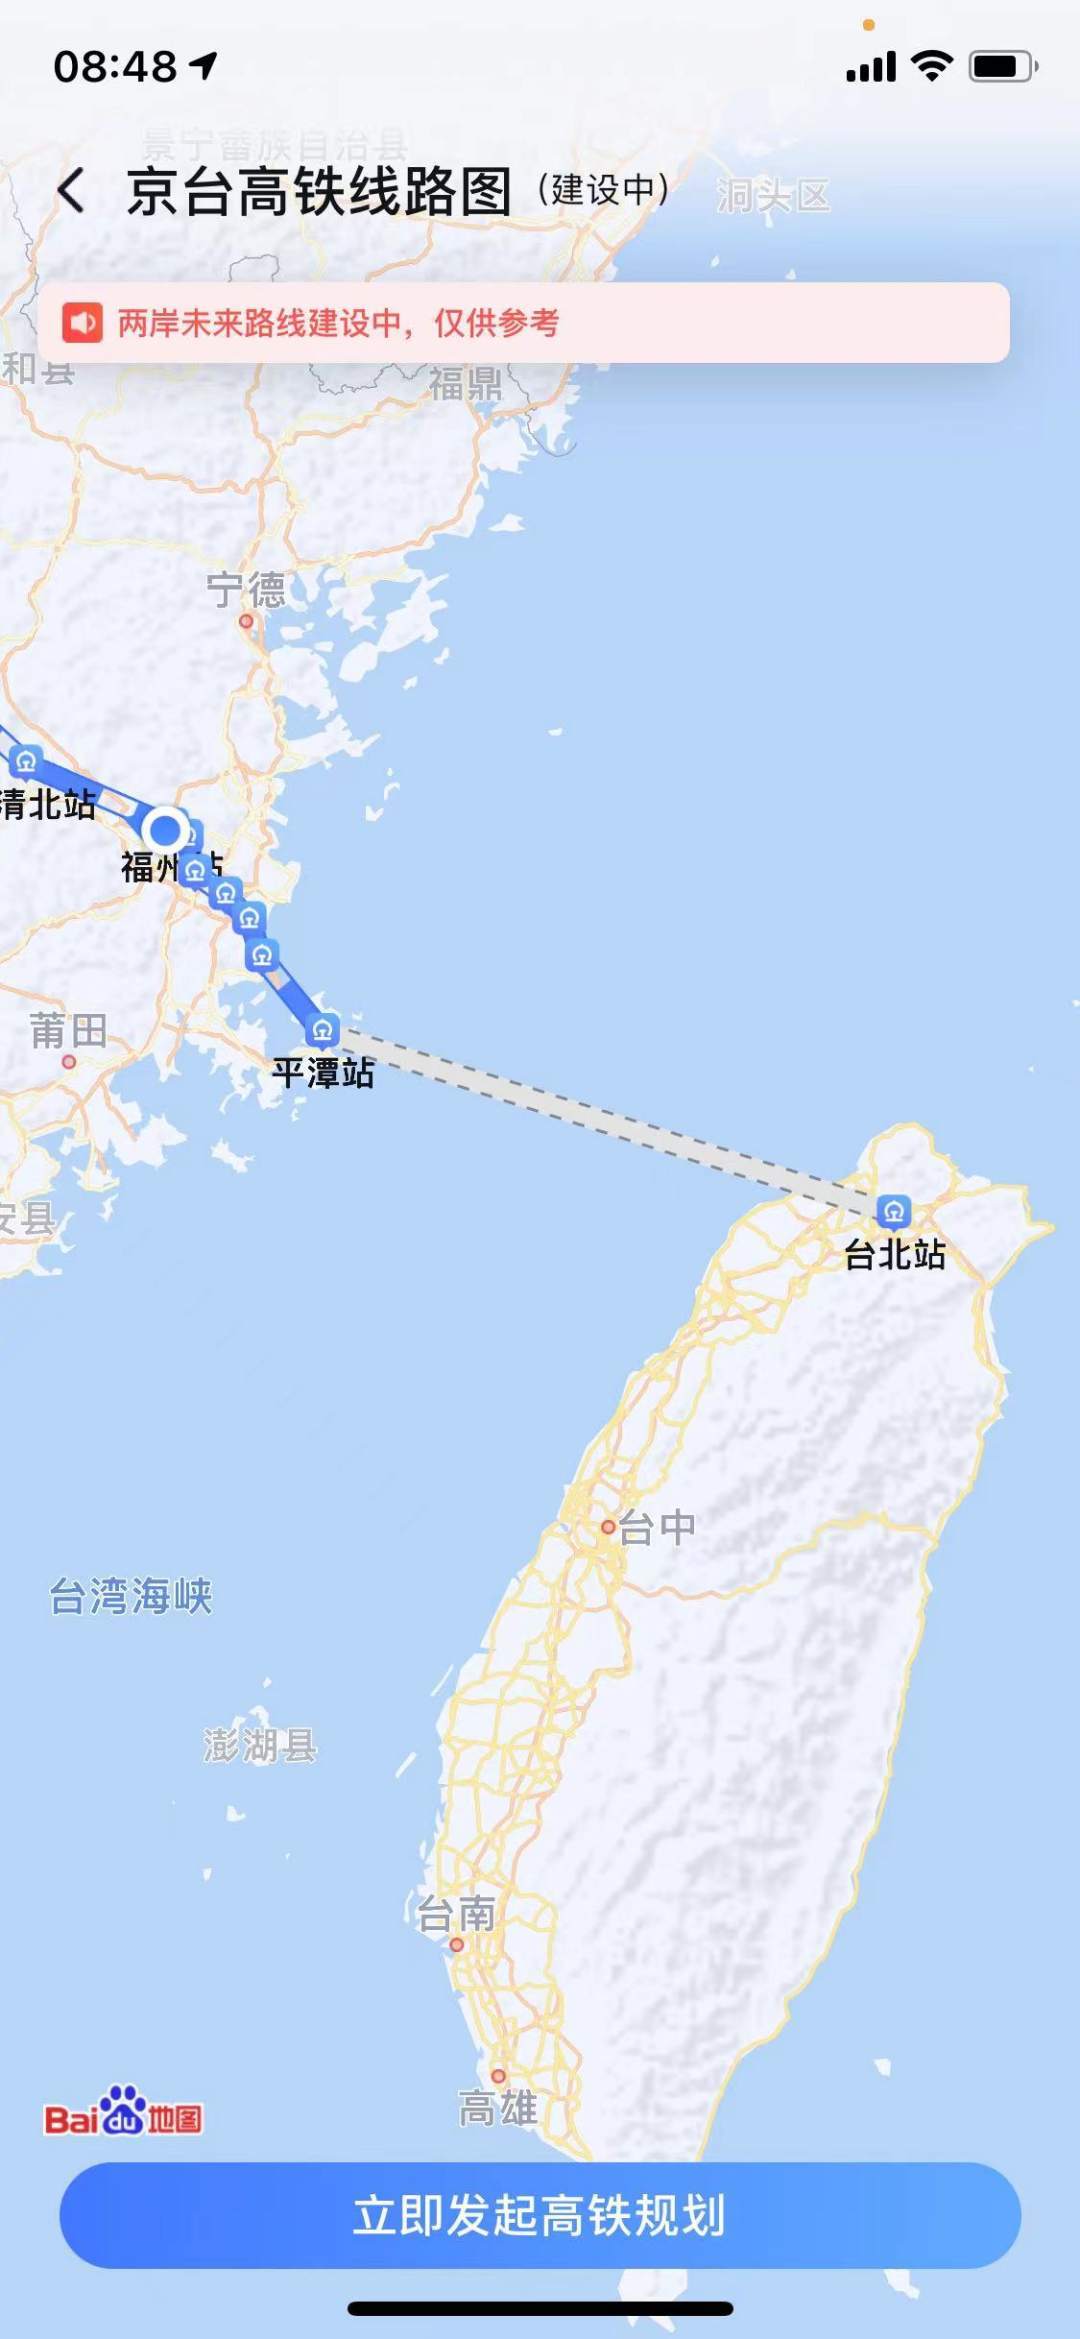 平潭岛地图与台湾地图图片